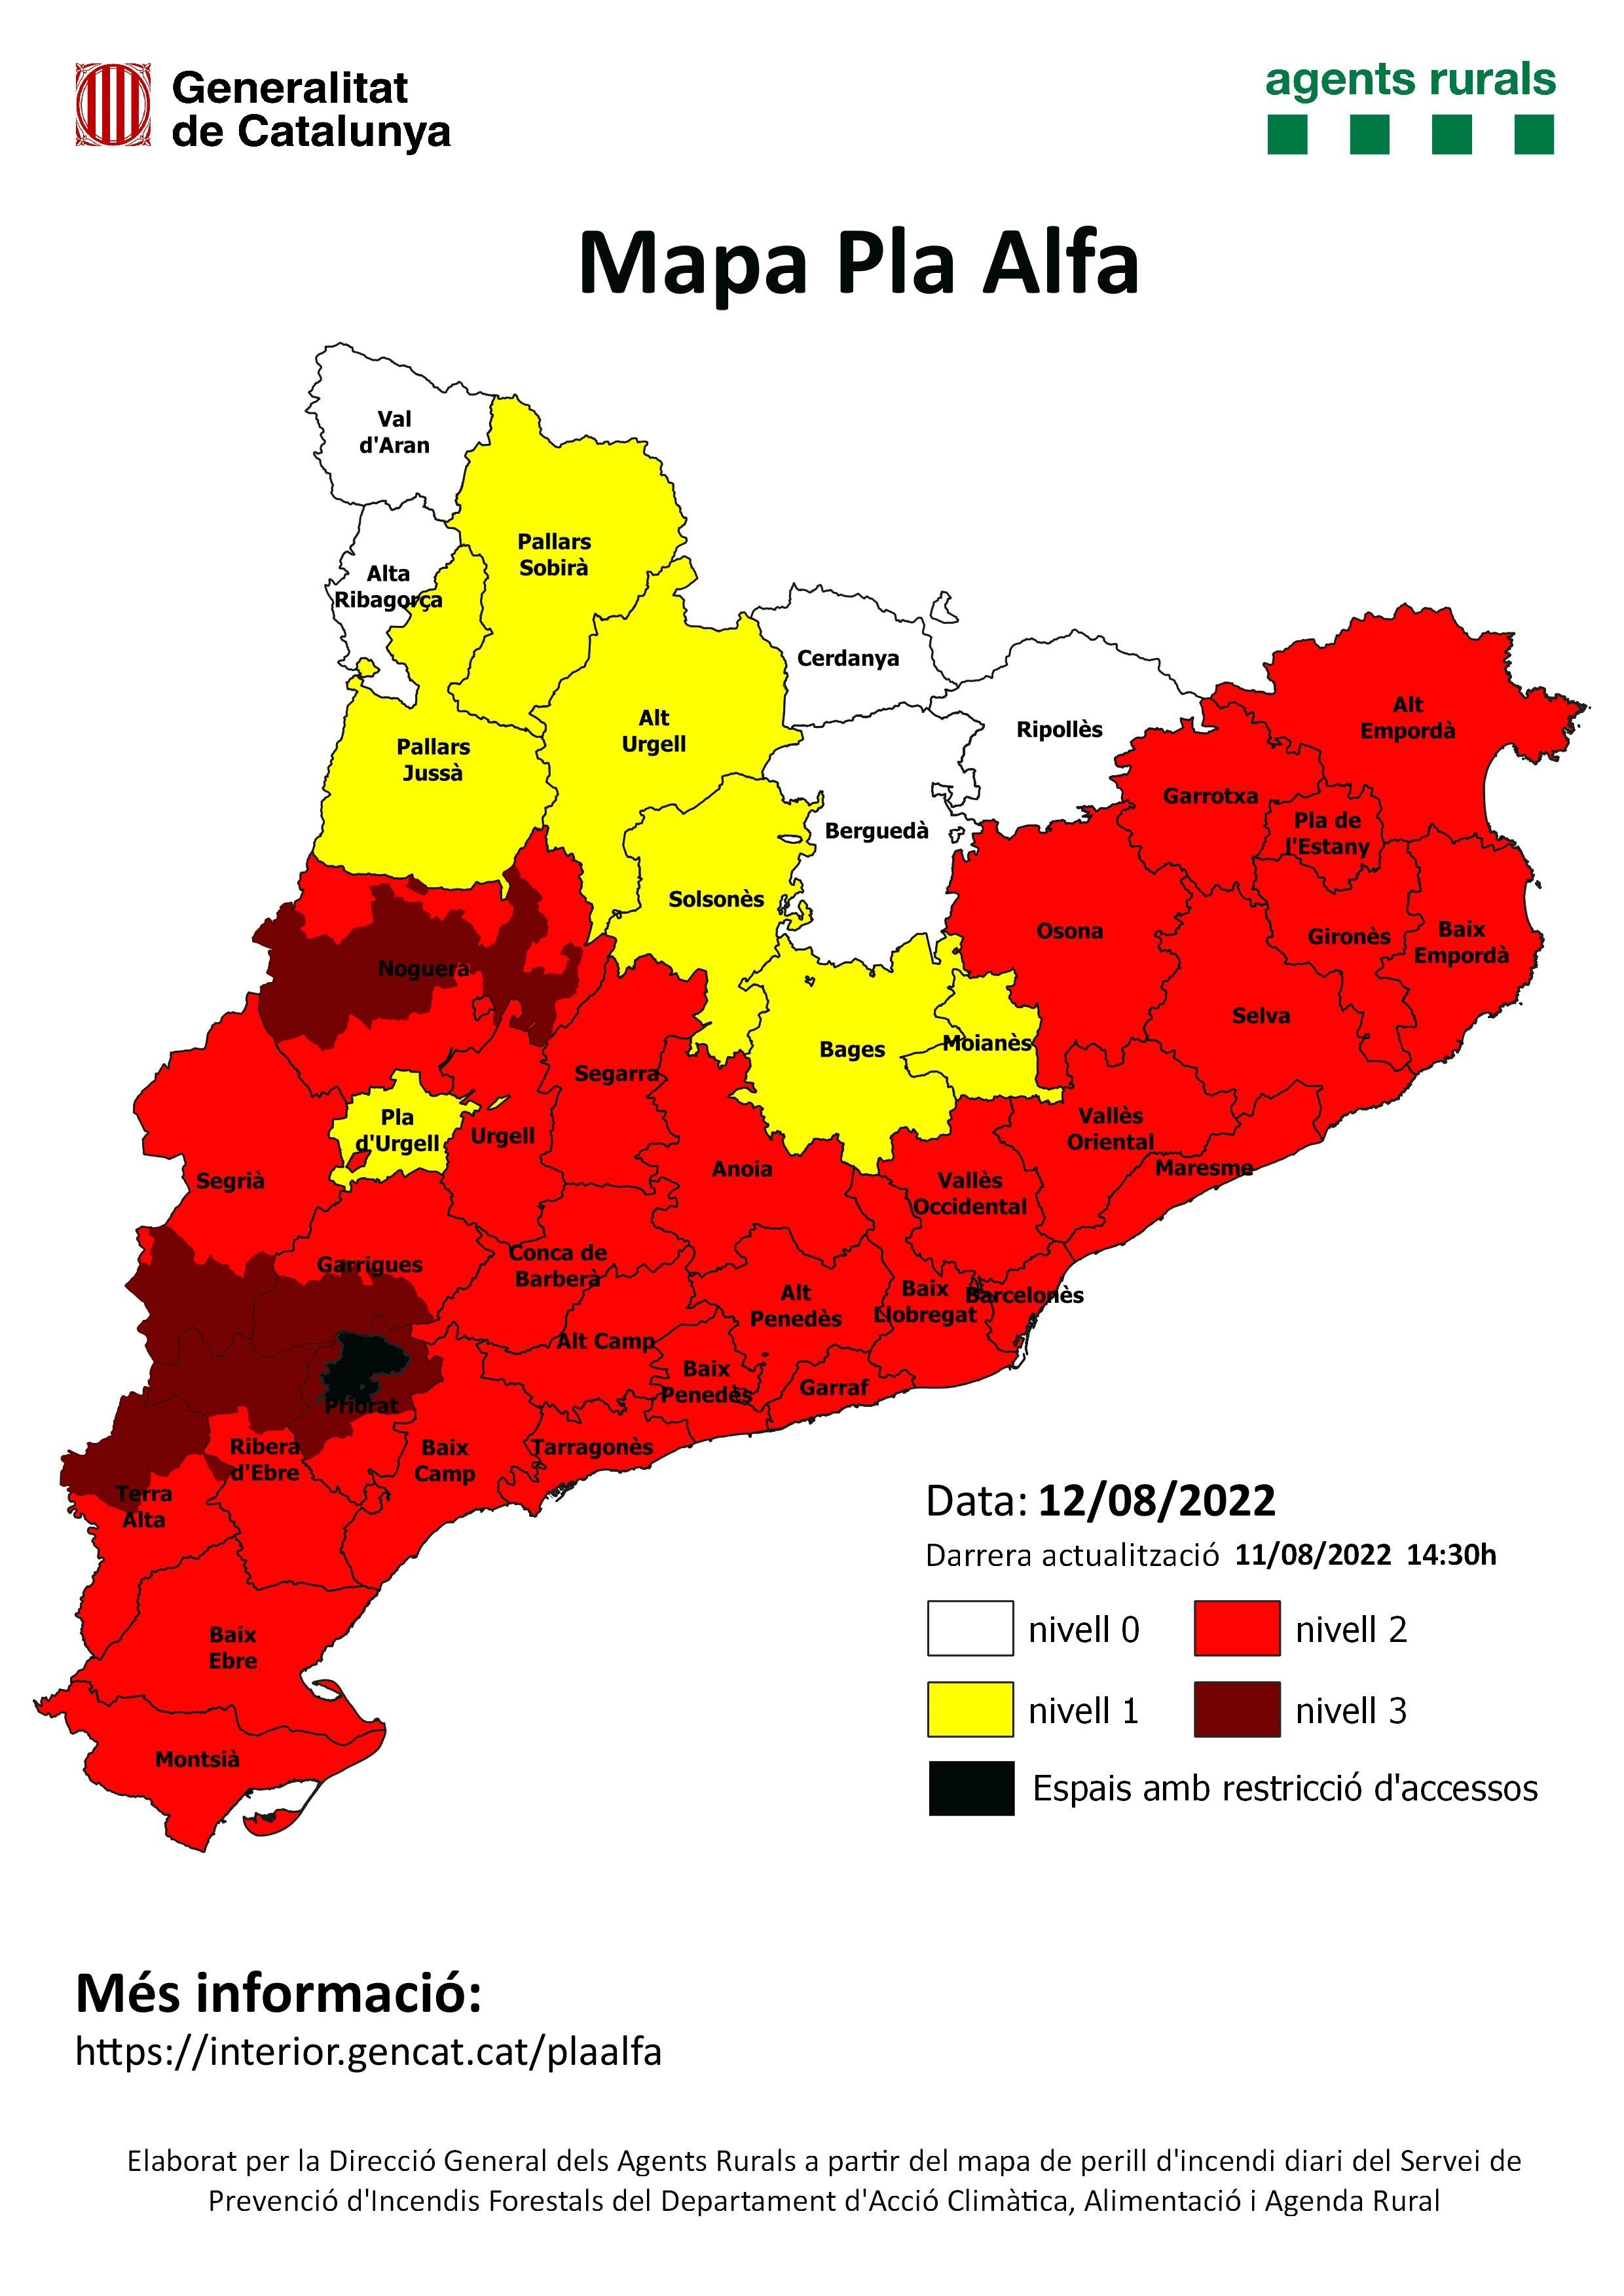 Niveles de precaución ante la activación del nivel 3 del Plan Alfa en algunas zonas de Cataluña / AGENTS RURALS